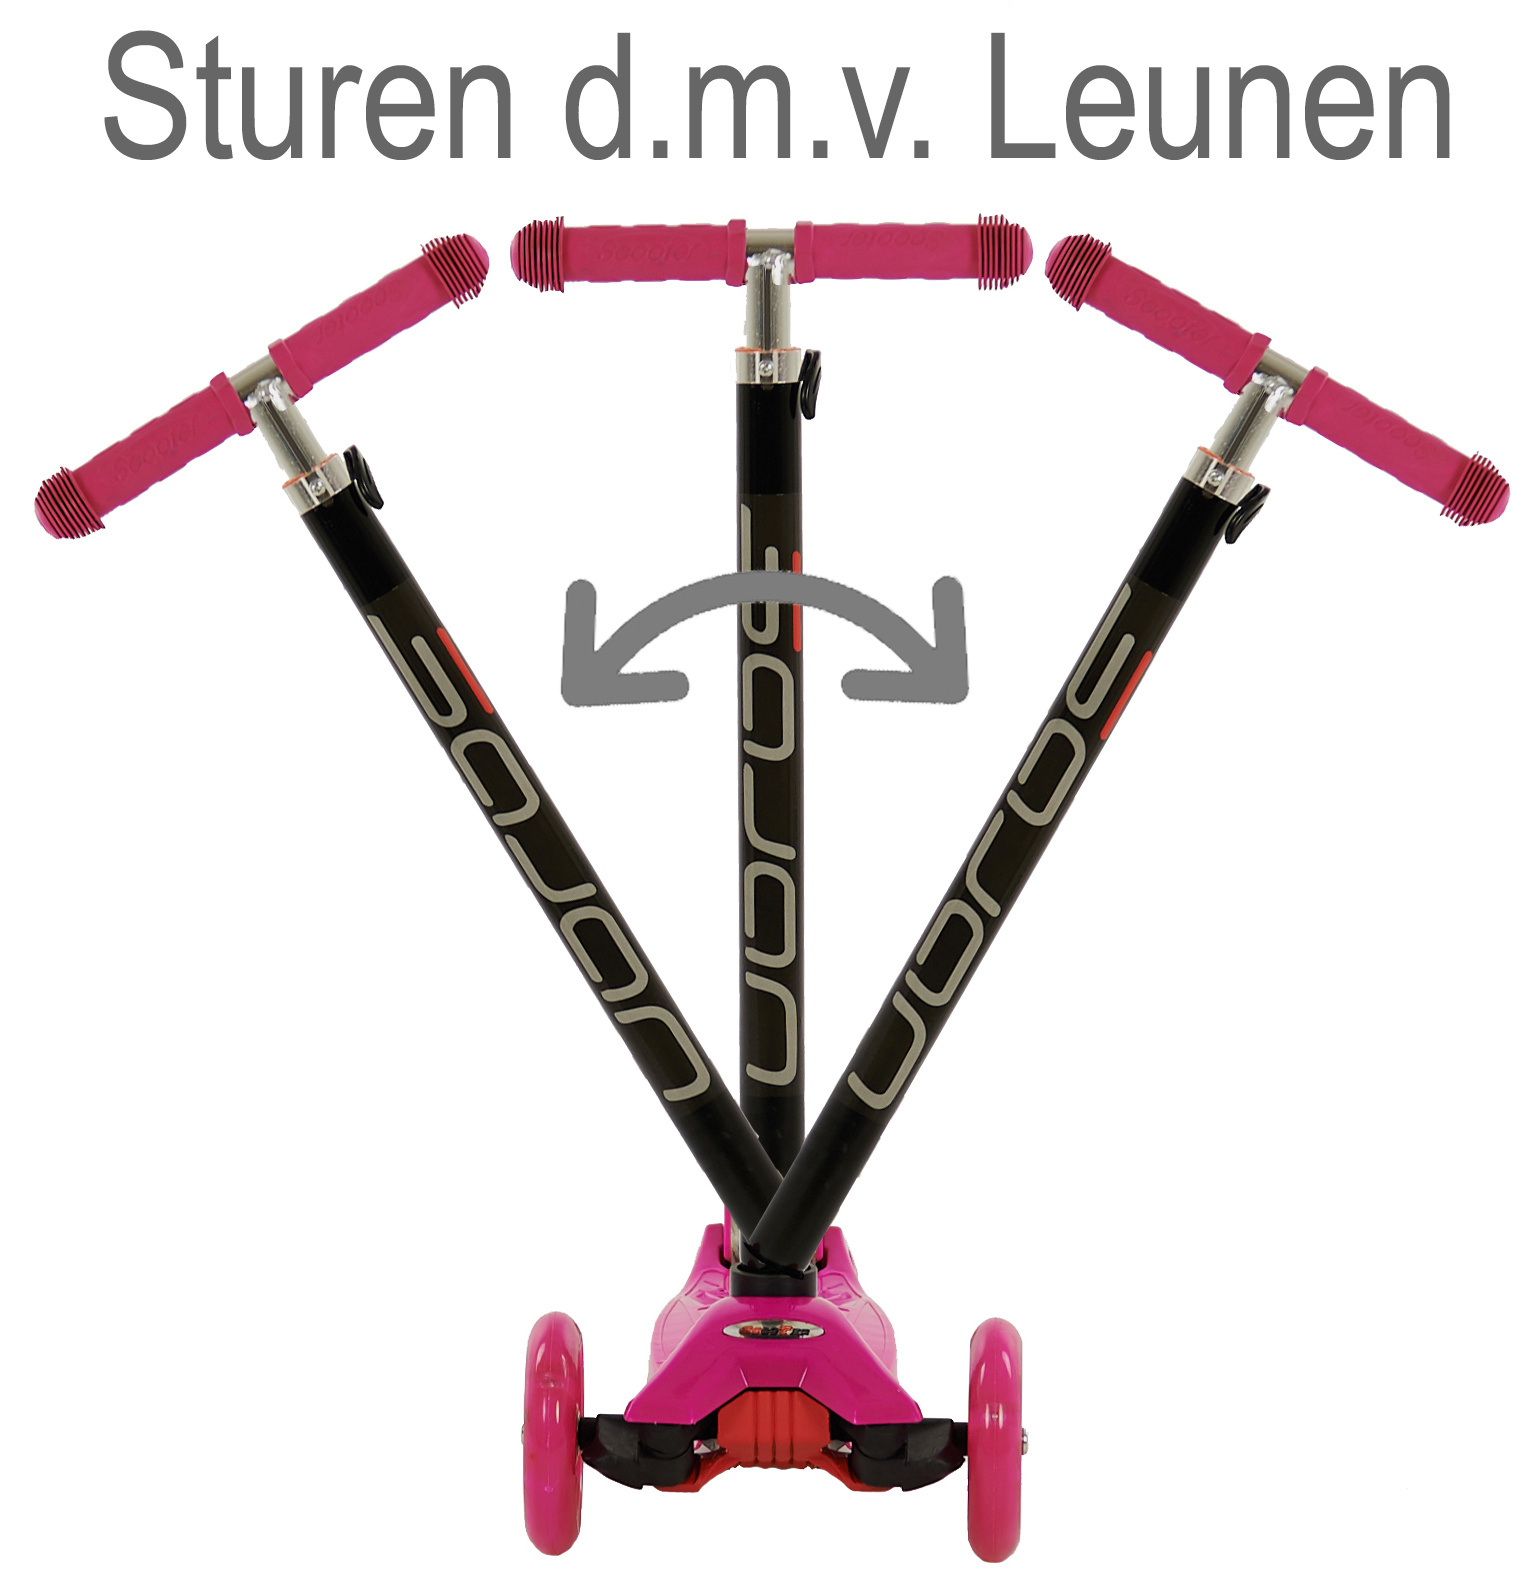 Wanorde Nat Geval Step met LED verlichte wielen roze online kopen | Prijskiller.nl